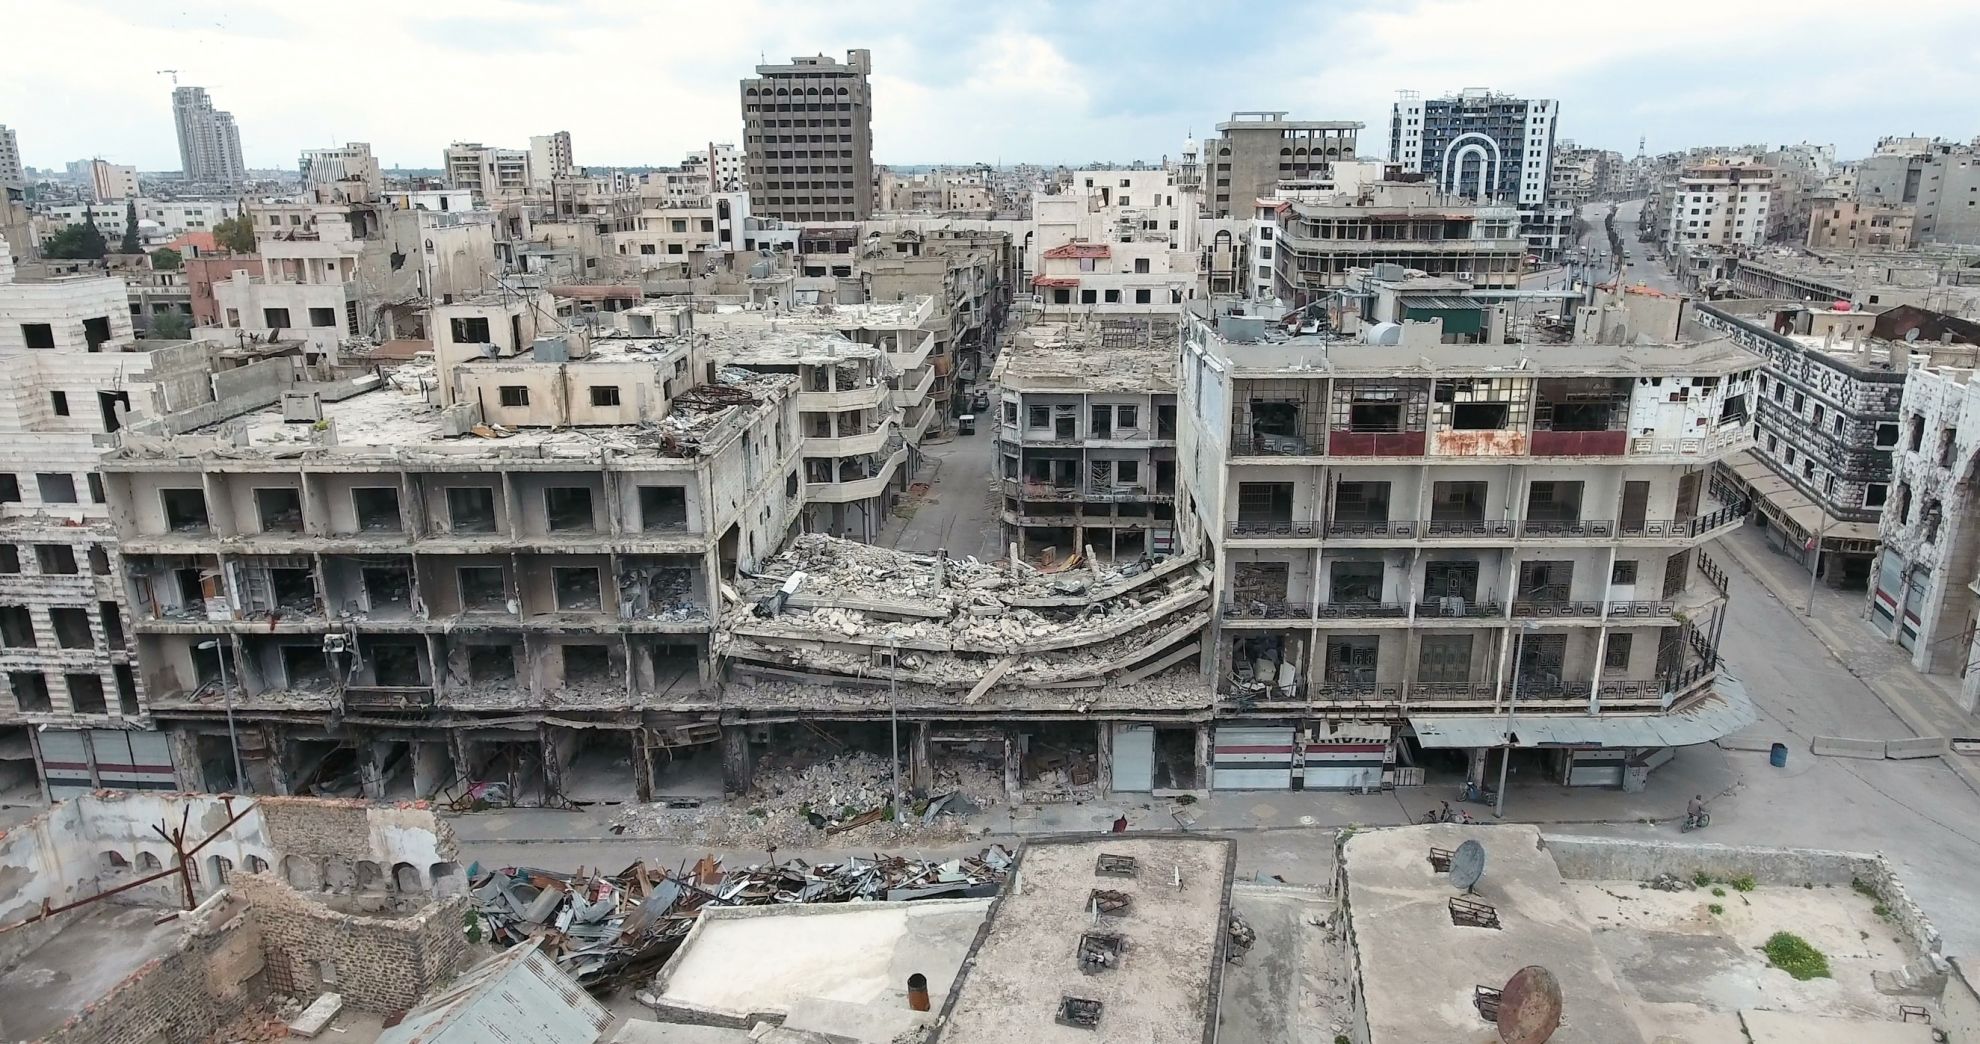 Die syrische Stadt Homs wurde völlig zerbombt. (Foto: fotolia/Olivier)